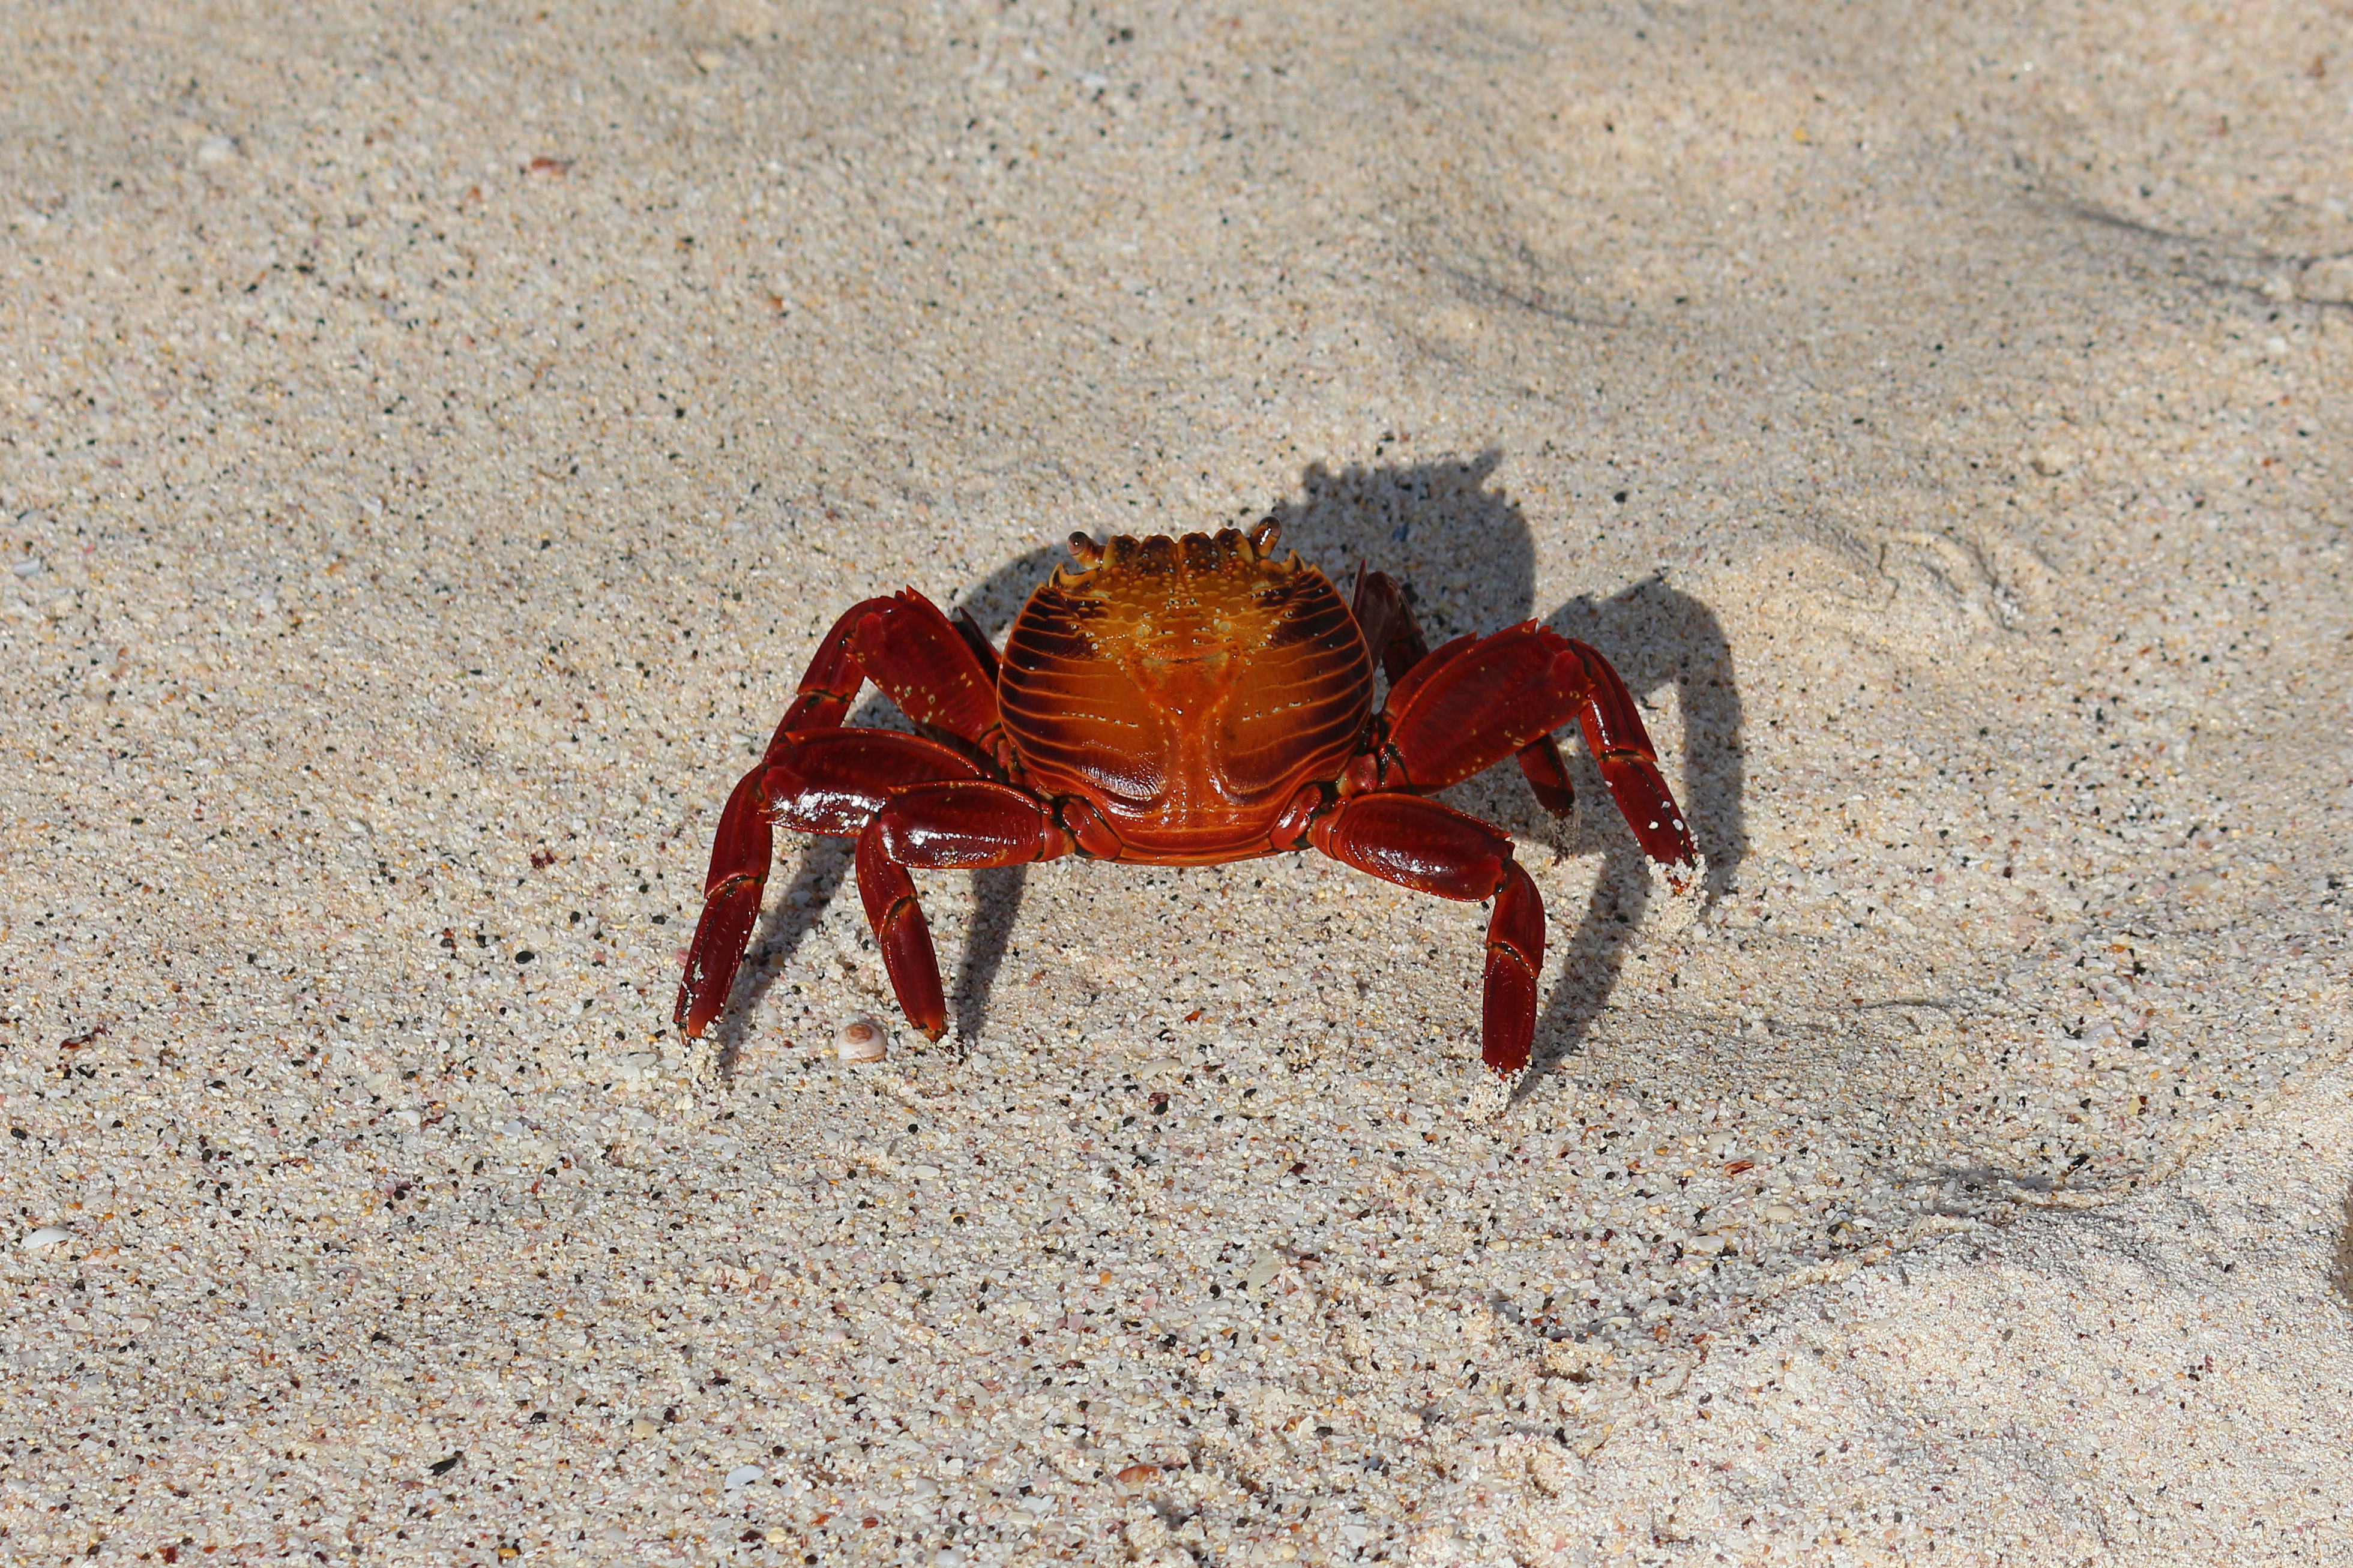 Red rock crab, Galápagos Islands